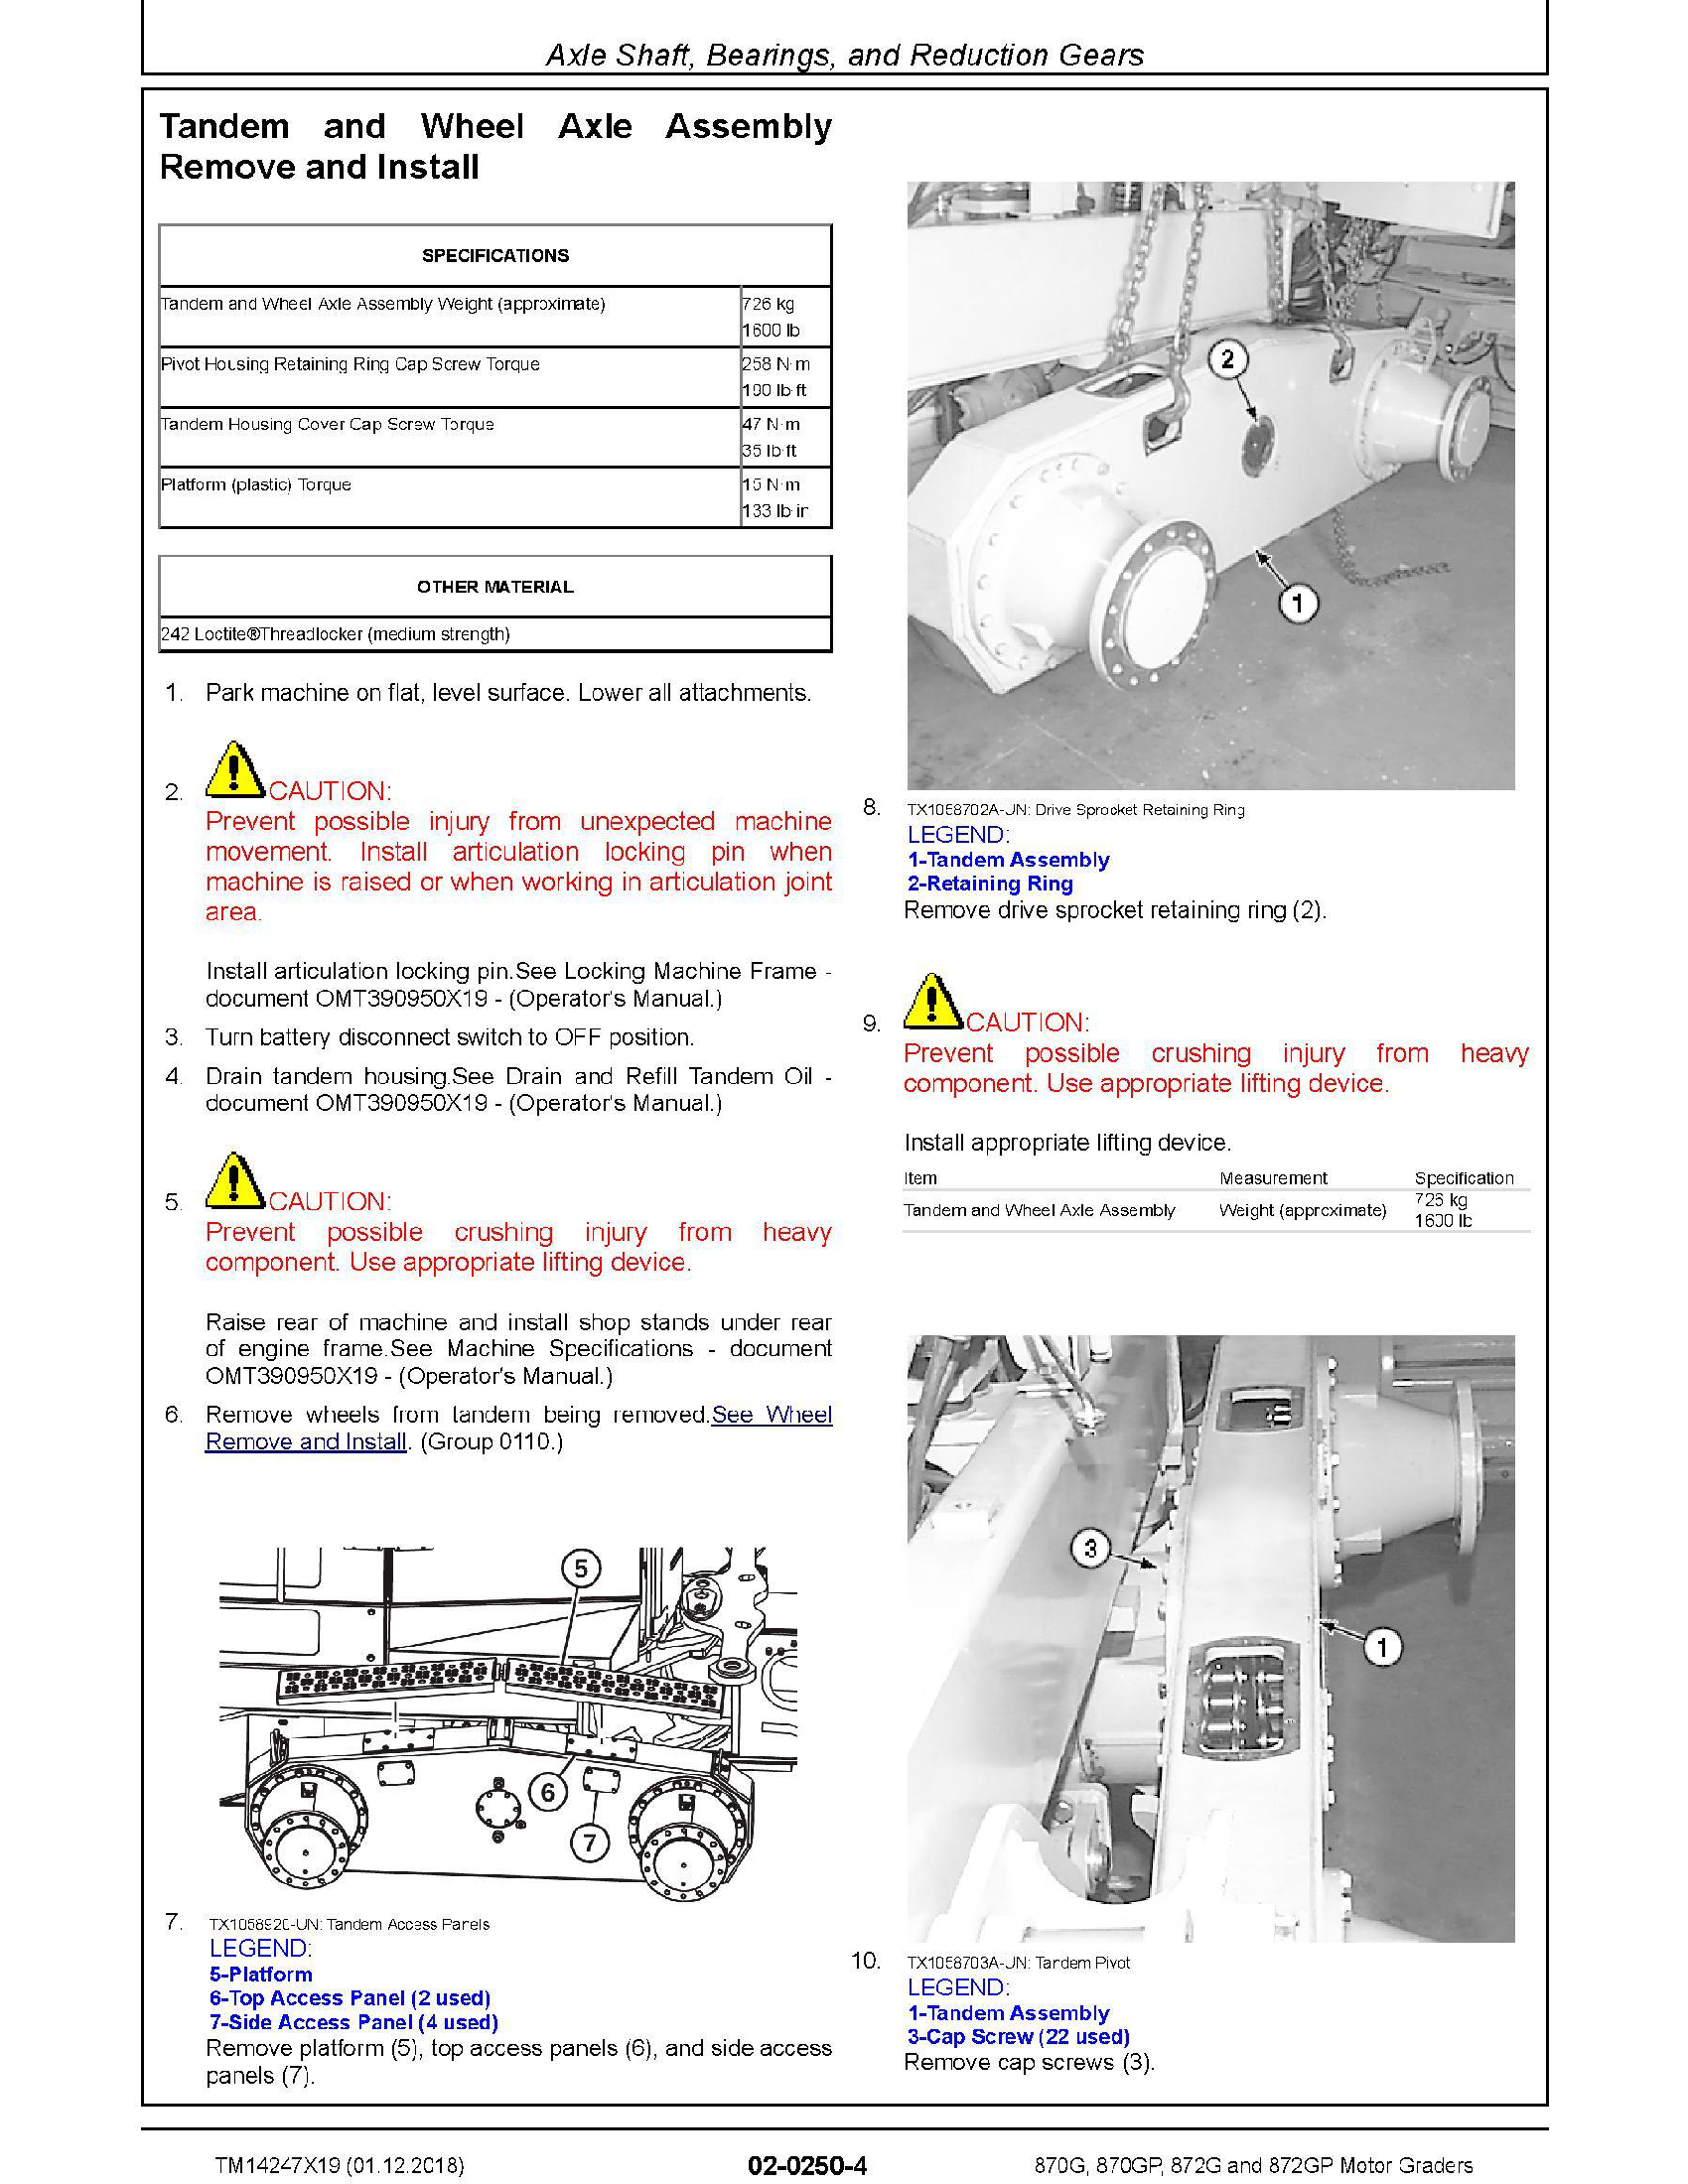 John Deere 135C manual pdf